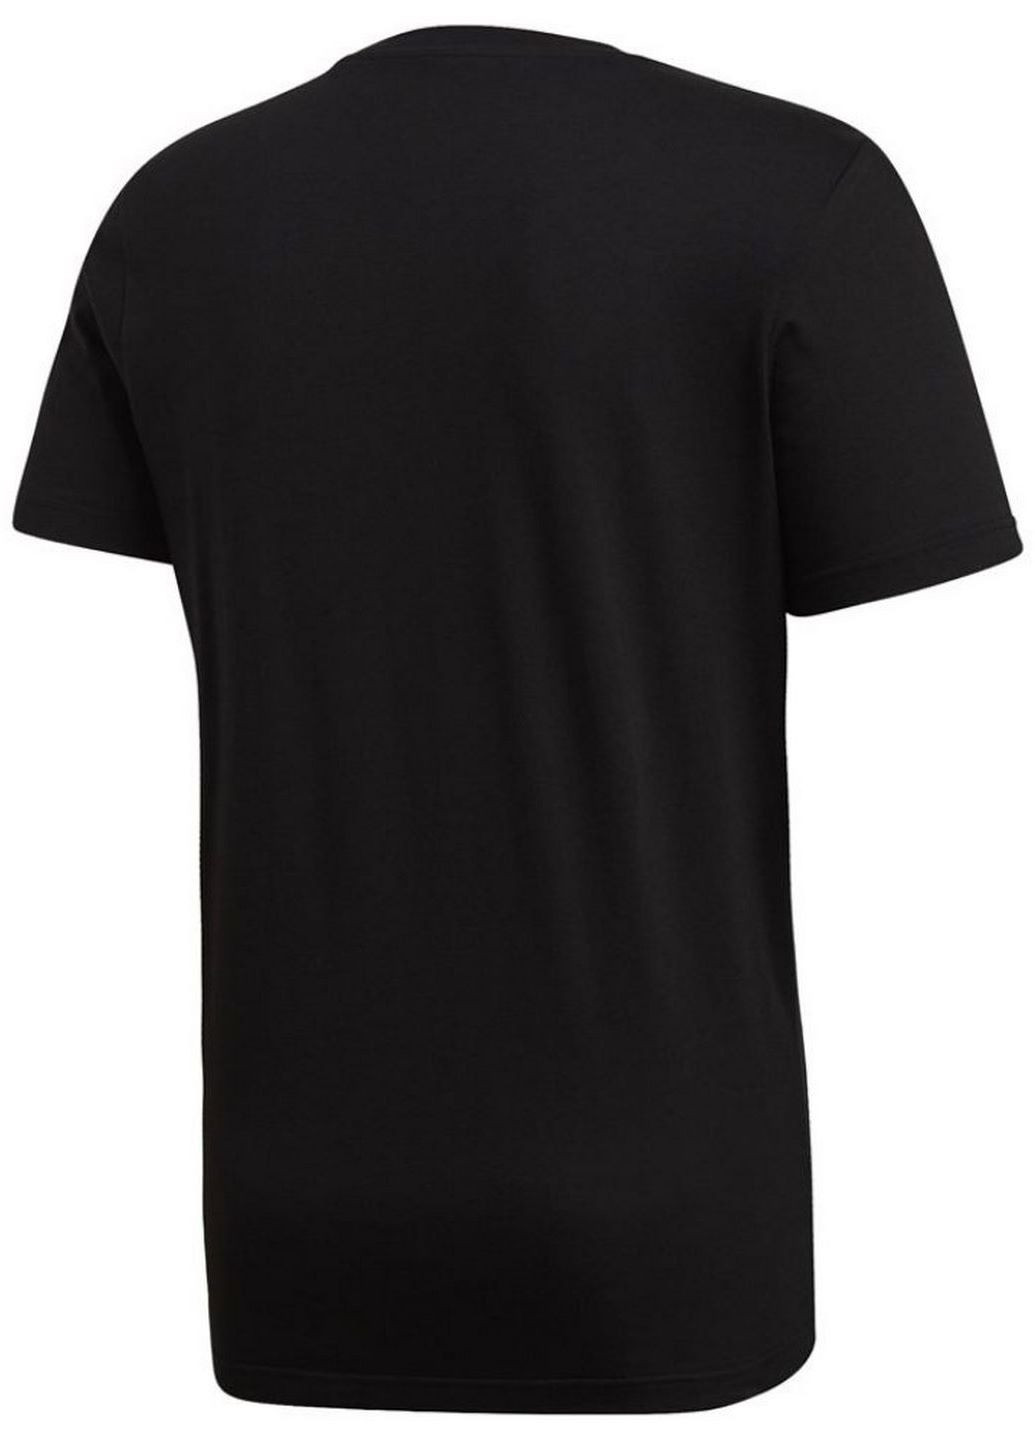 Черная женская футболка doodle bos fn1753 adidas